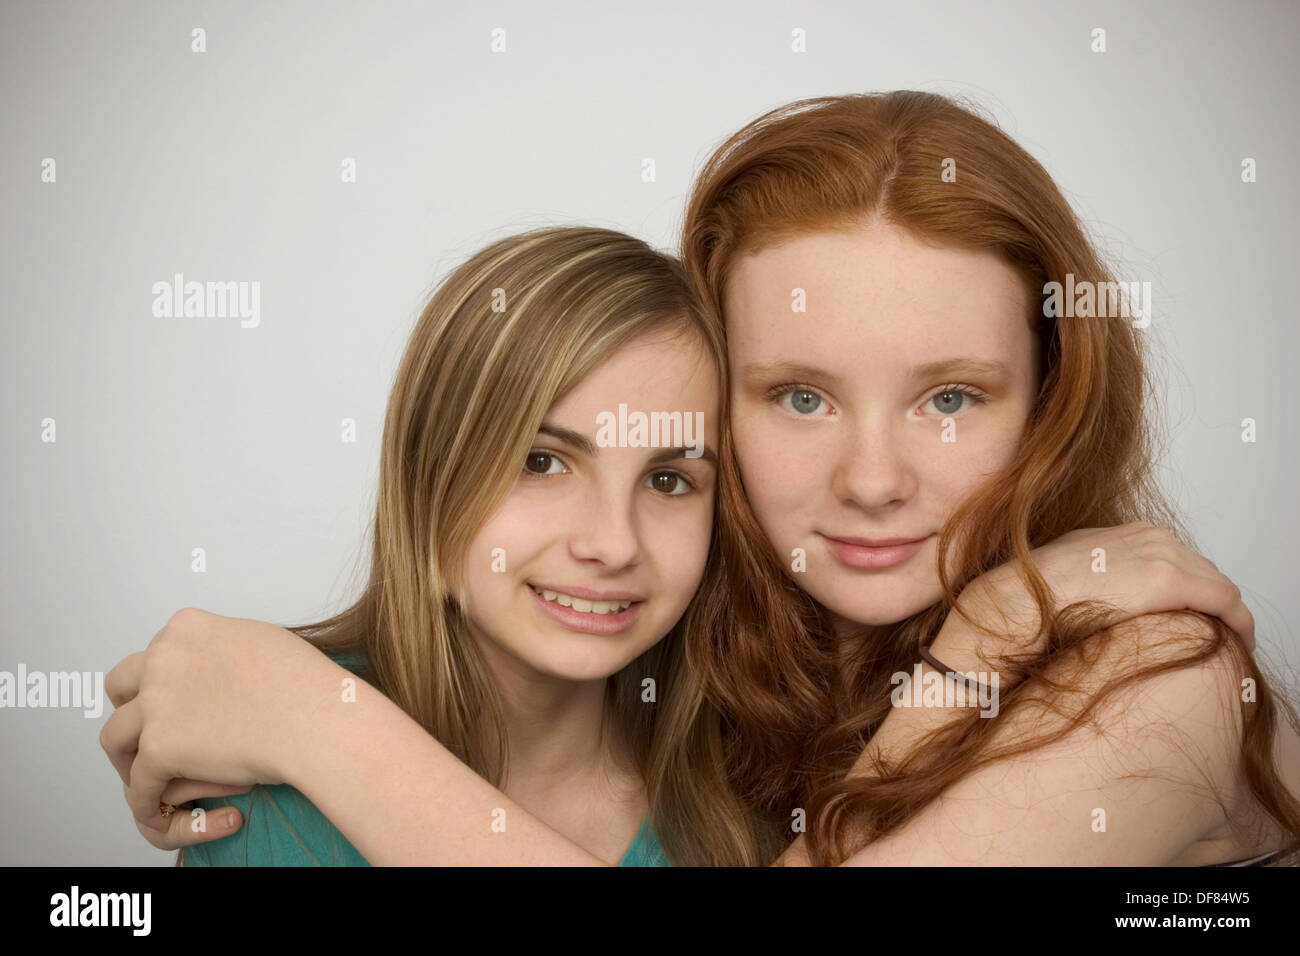 Lange Rote Haare Und Blond Haar Jugendlich Madchen Umarmen Einander Stockfotografie Alamy